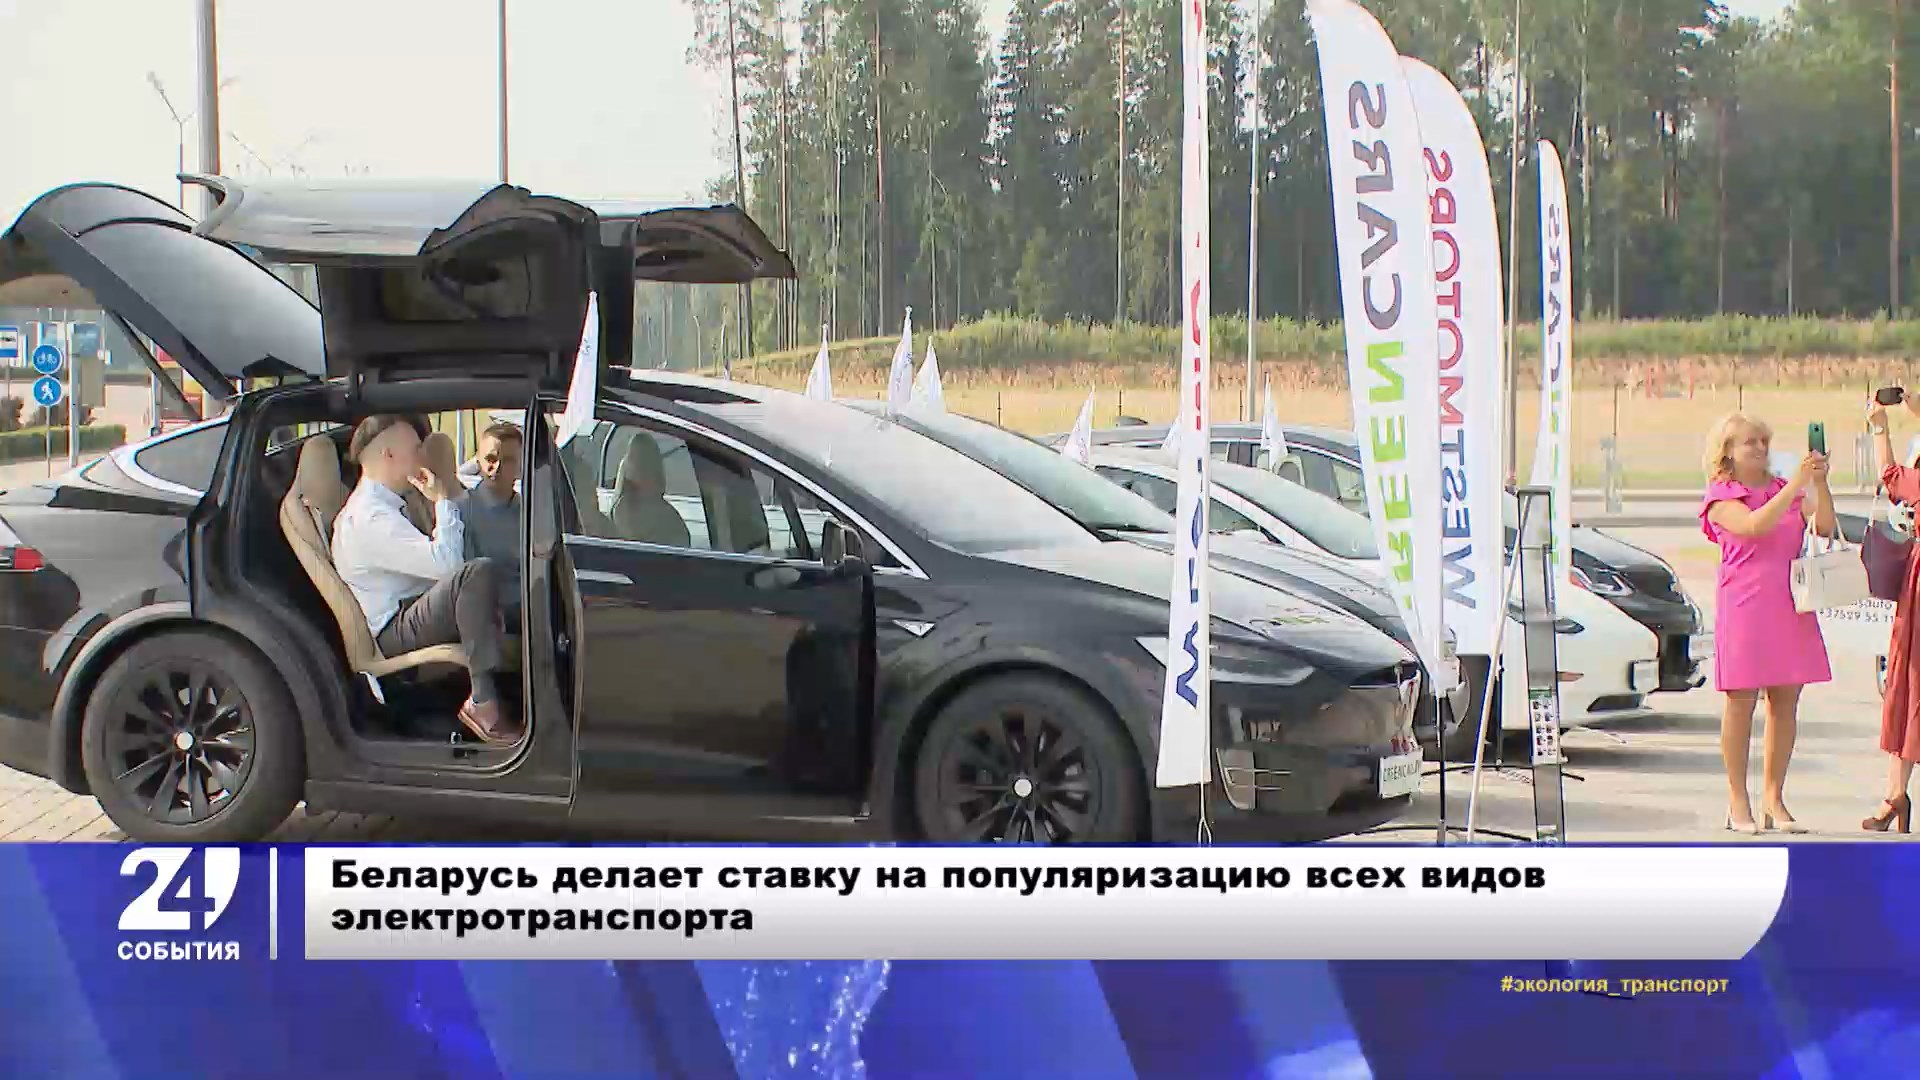 Перспективы развития электротранспорта в Беларуси